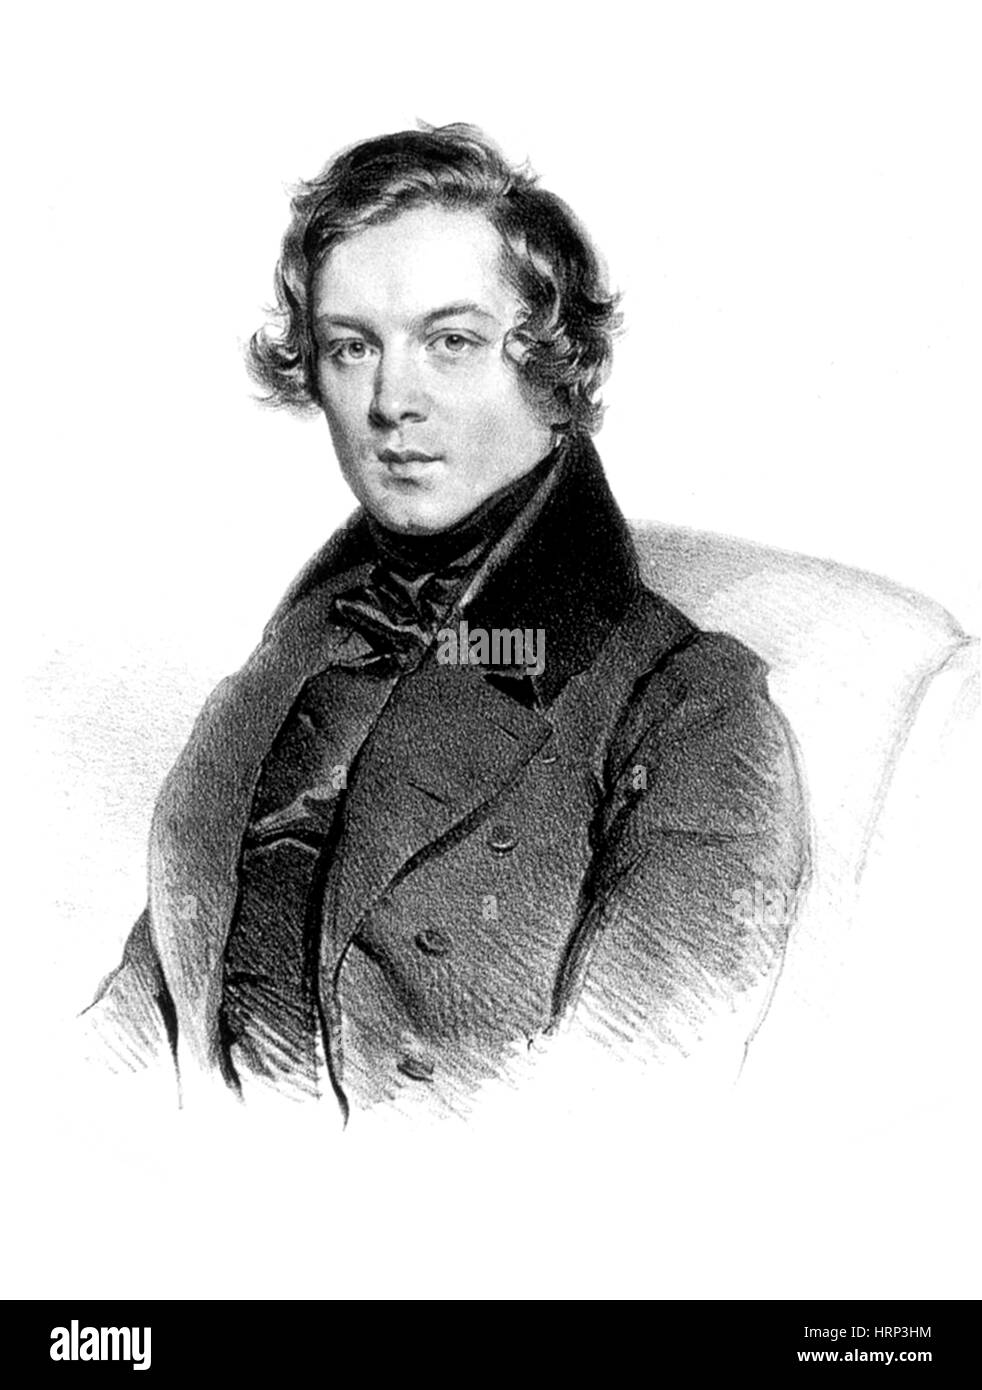 Robert Schumann, German Composer Stock Photo